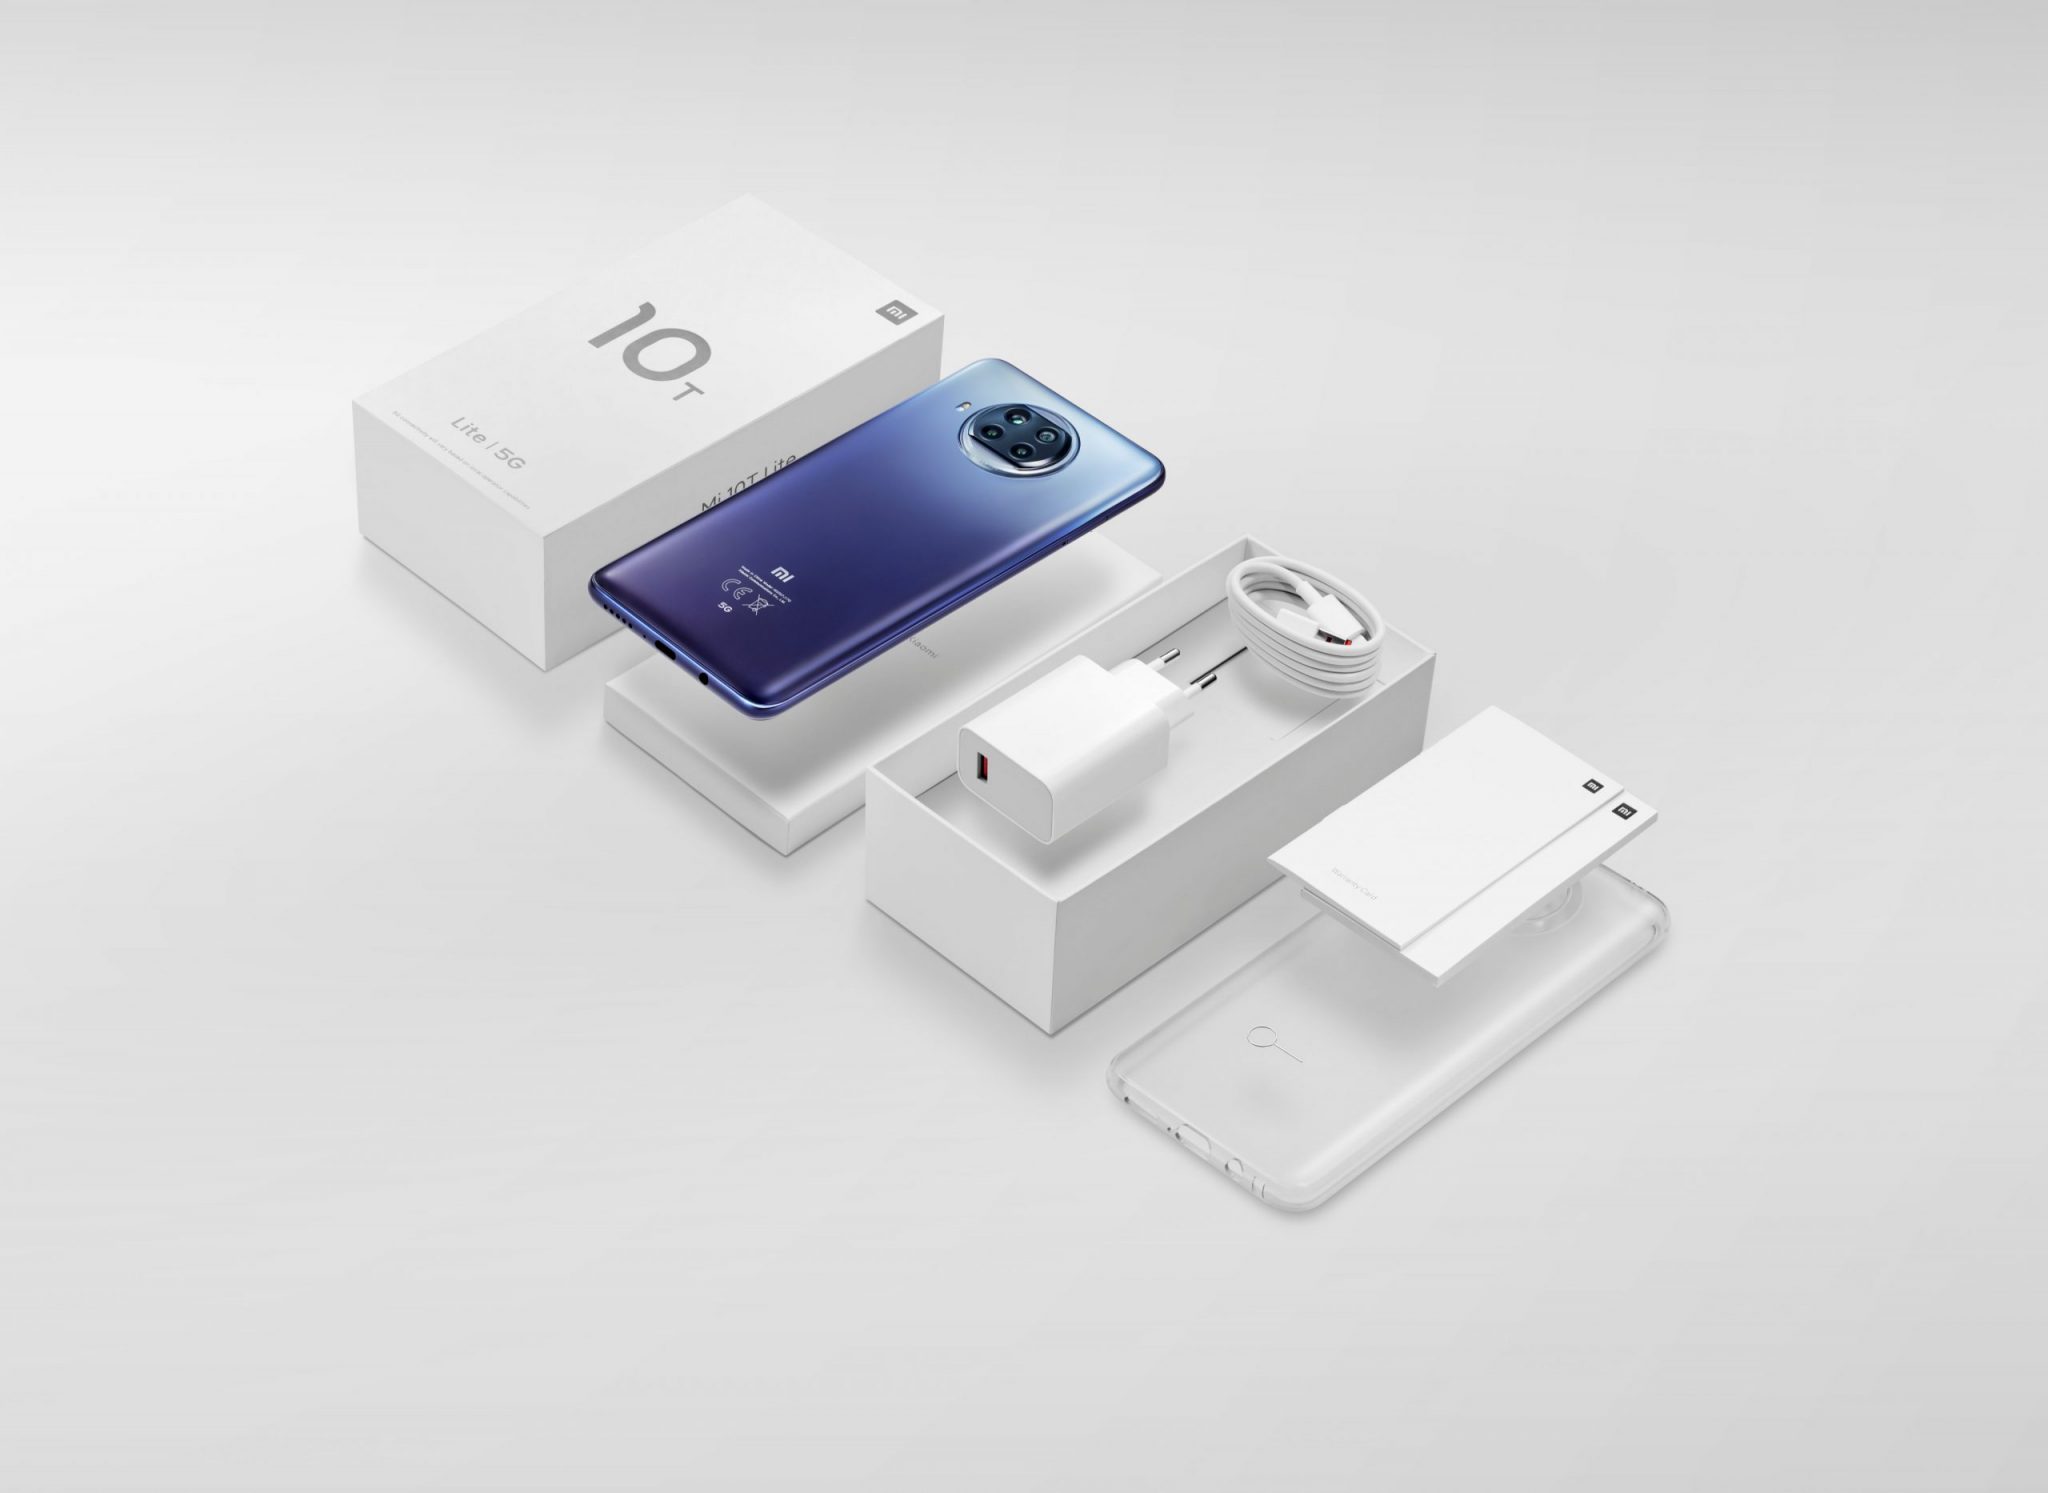 Xiaomi ger dig allt du behöver men med 60% mindre plast